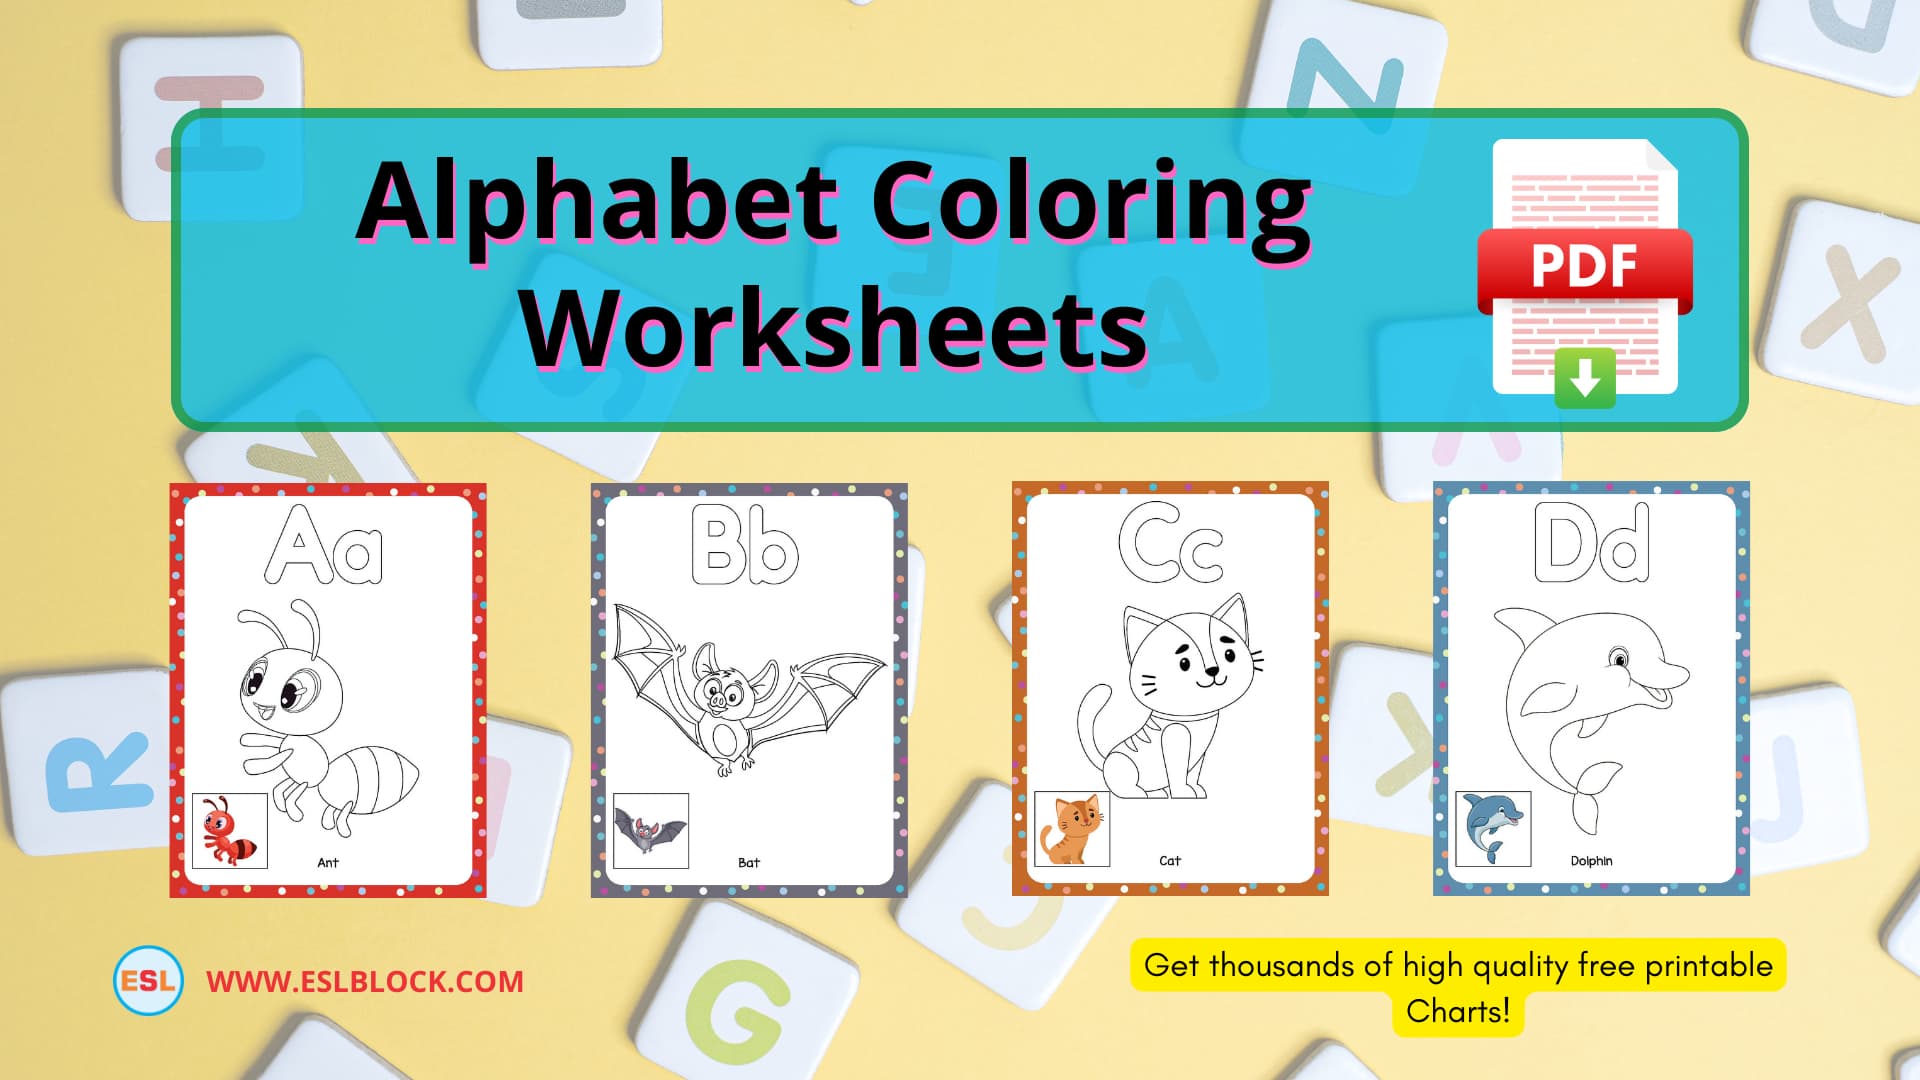 Alphabet Coloring Worksheets, 1st Grade Worksheets, Alphabet Worksheets, Free Worksheets, Kindergarten Worksheets, Preschool Worksheets